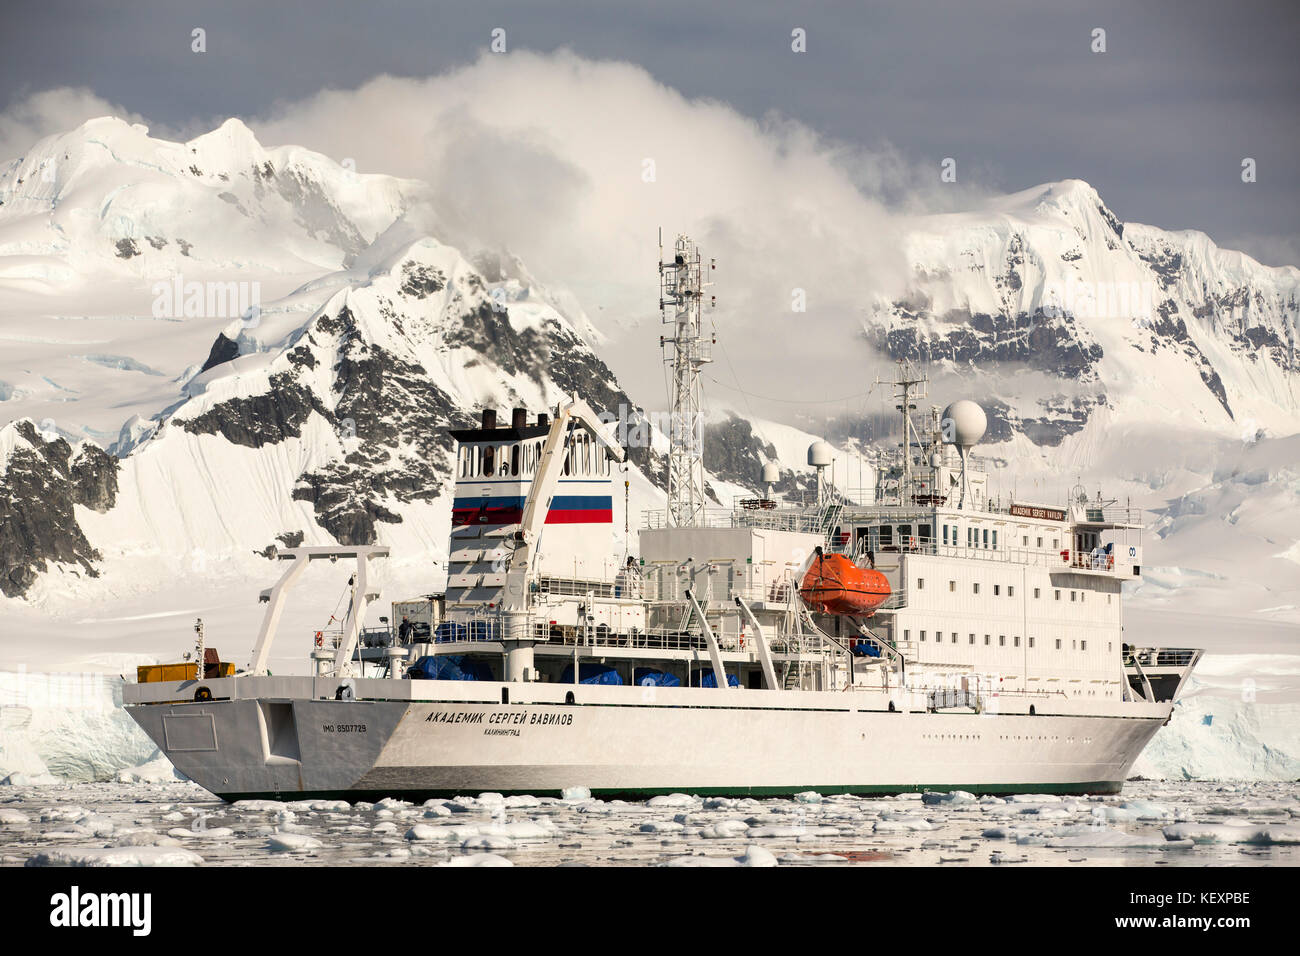 El Akademik Sergey Vavilov, un buque reforzado para hielo en un crucero de expedición a la Antártida, en el Estrecho de Gerlache en la península antártica, que es uno de los de más rápido calentamiento del planeta. Foto de stock